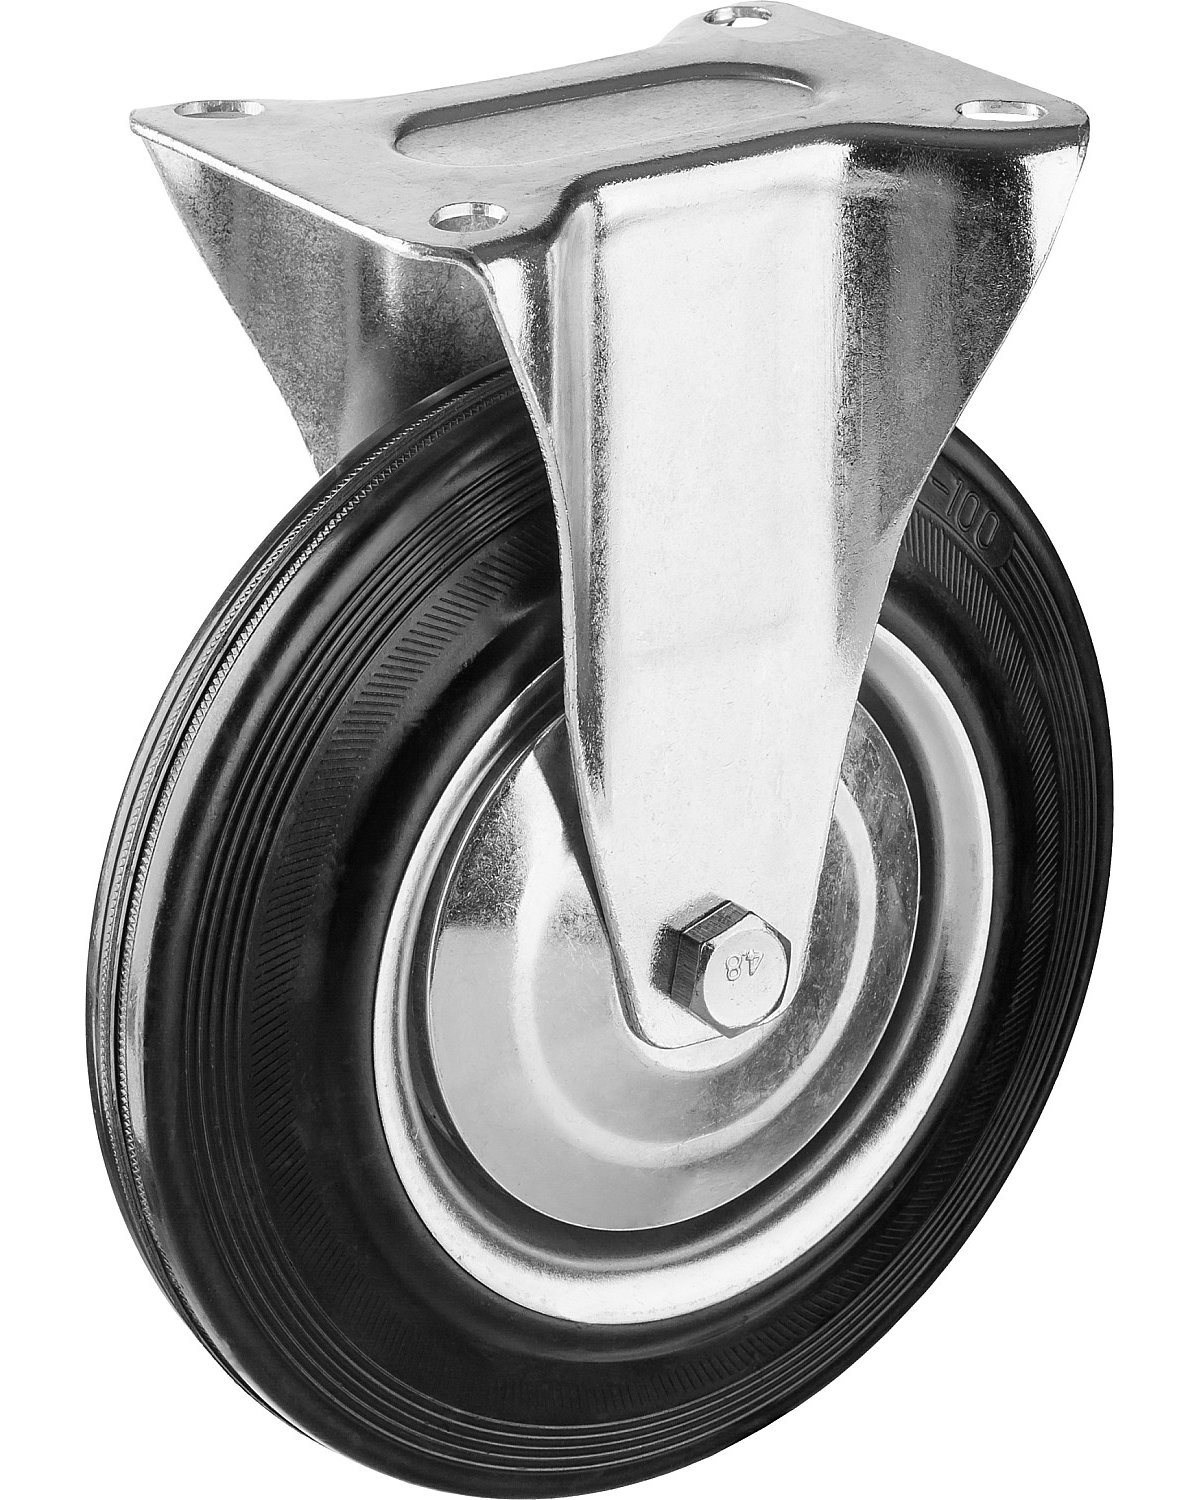 Неповоротное колесо резина металл игольчатый подшипник ЗУБР Профессионал d 200 мм г п 185 кг (30936-200-F)